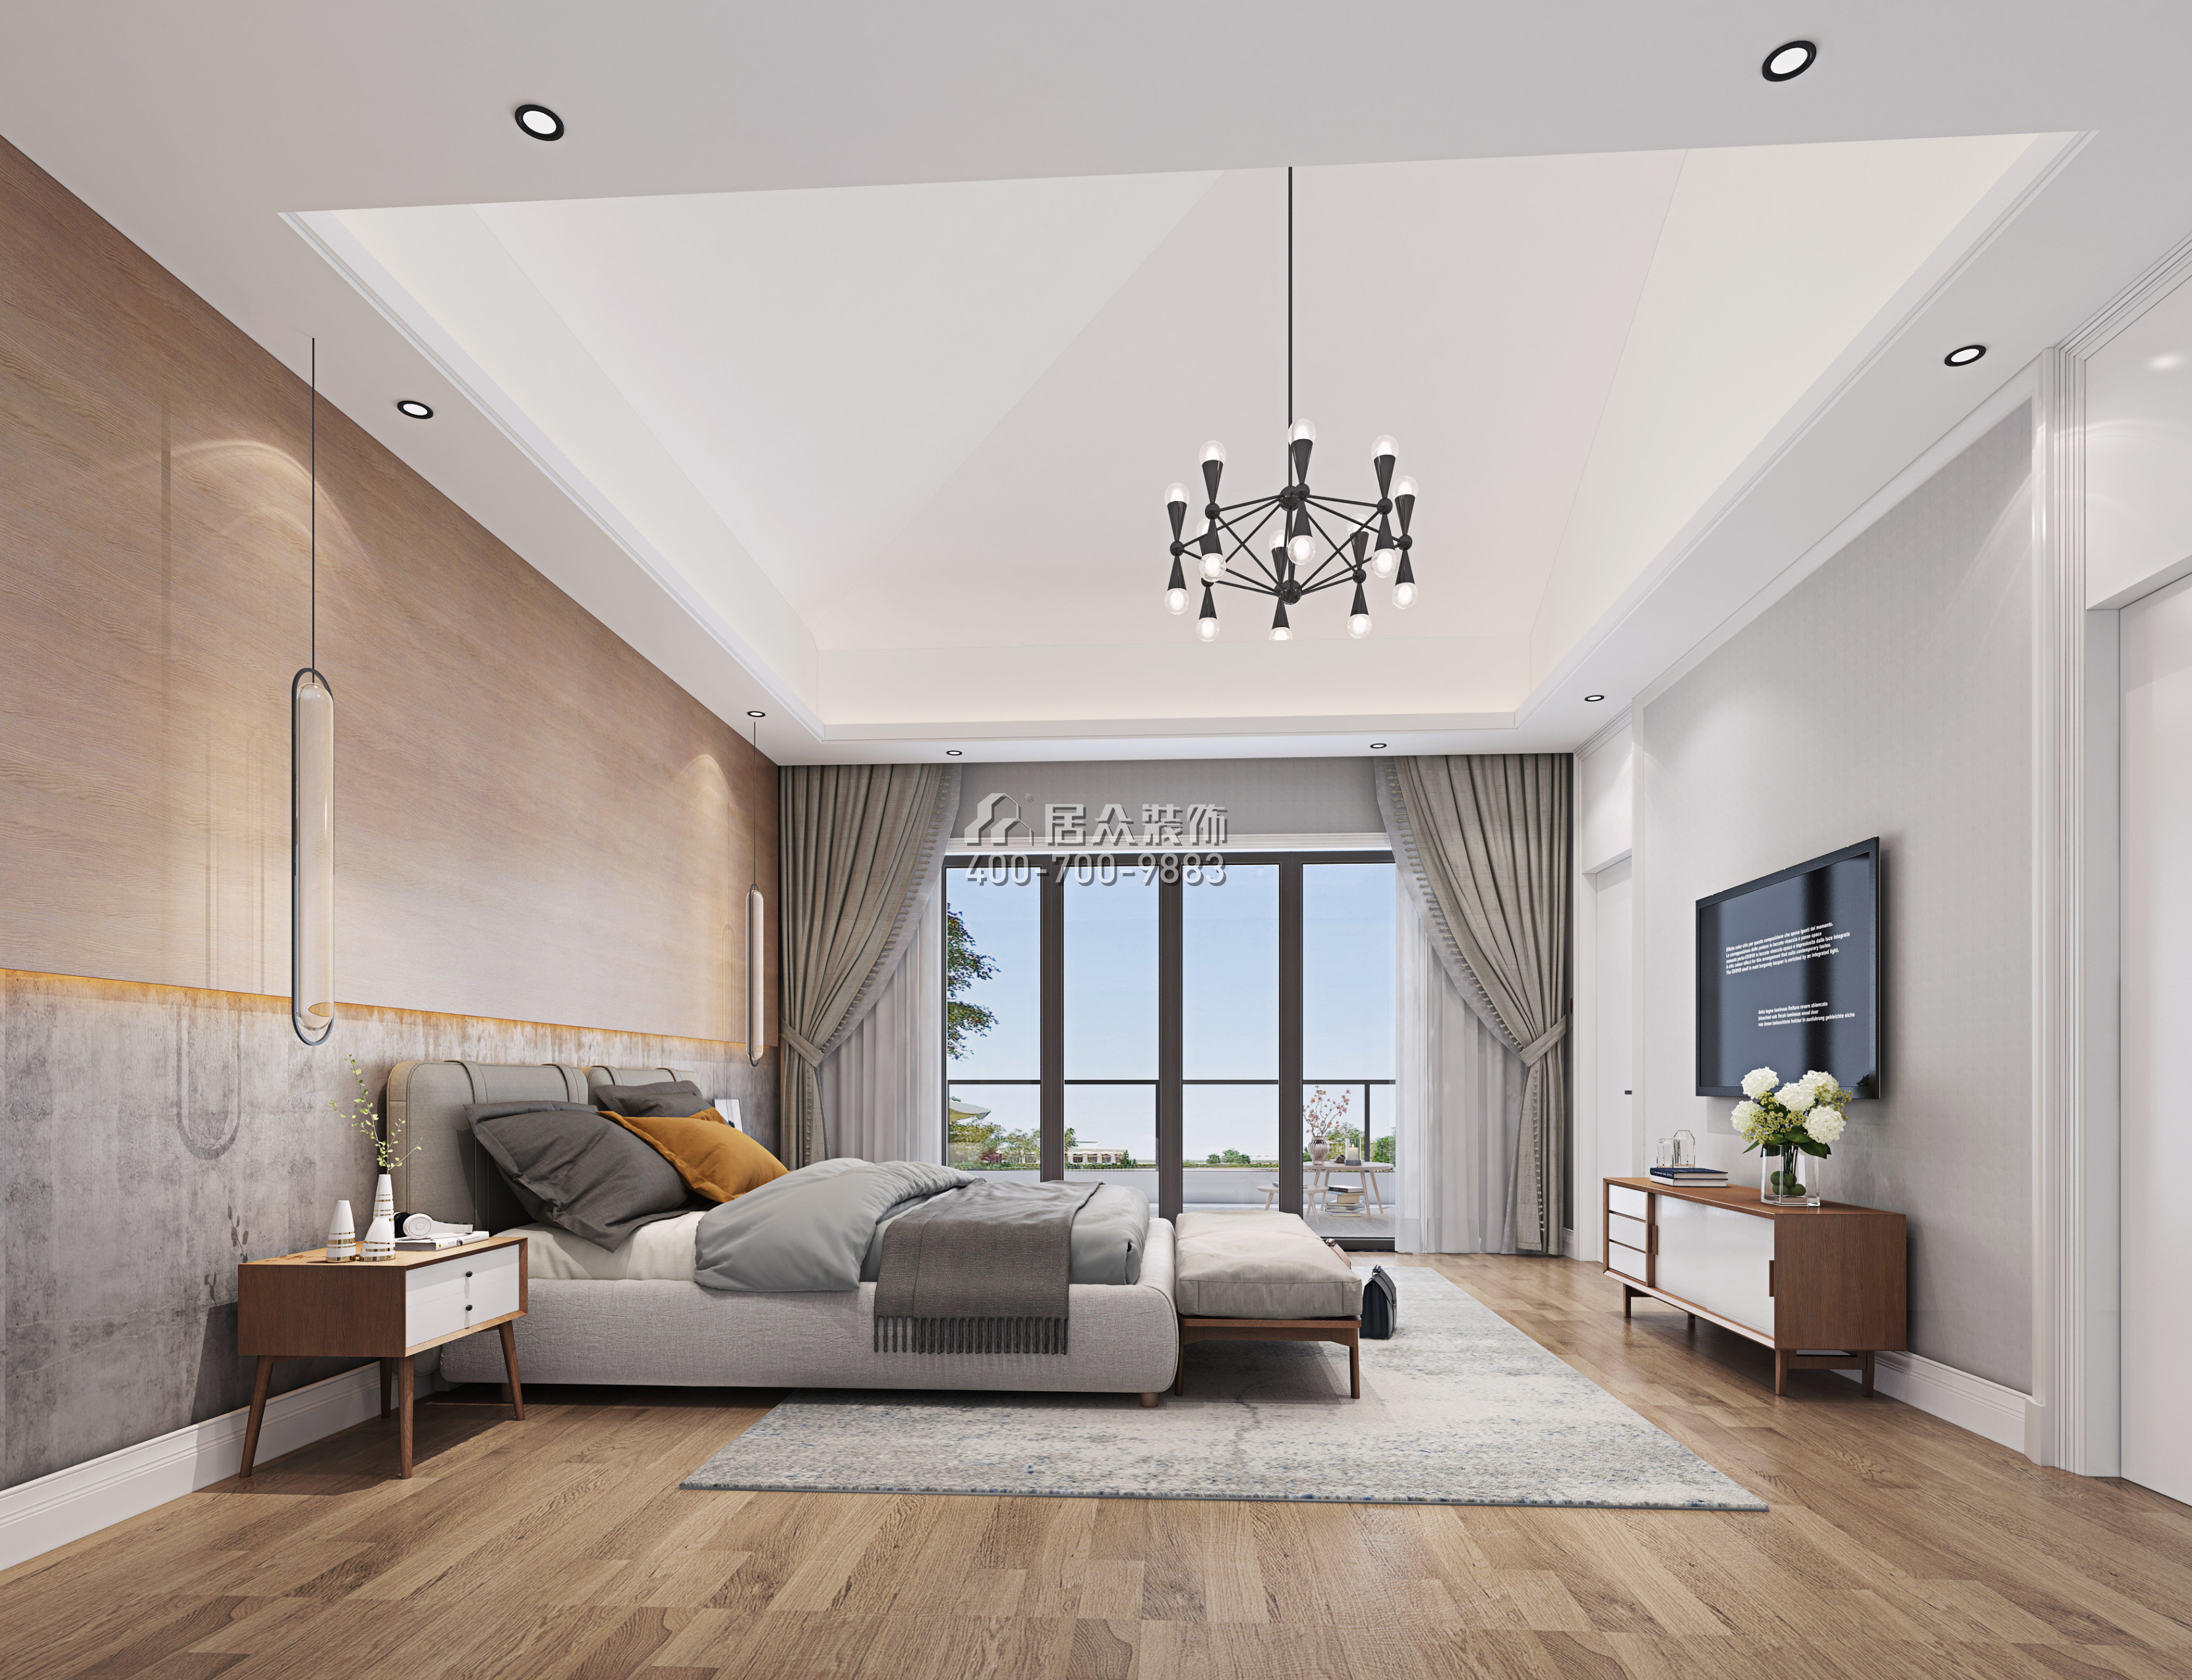 海逸豪庭267平方米現代簡約風格別墅戶型臥室裝修效果圖